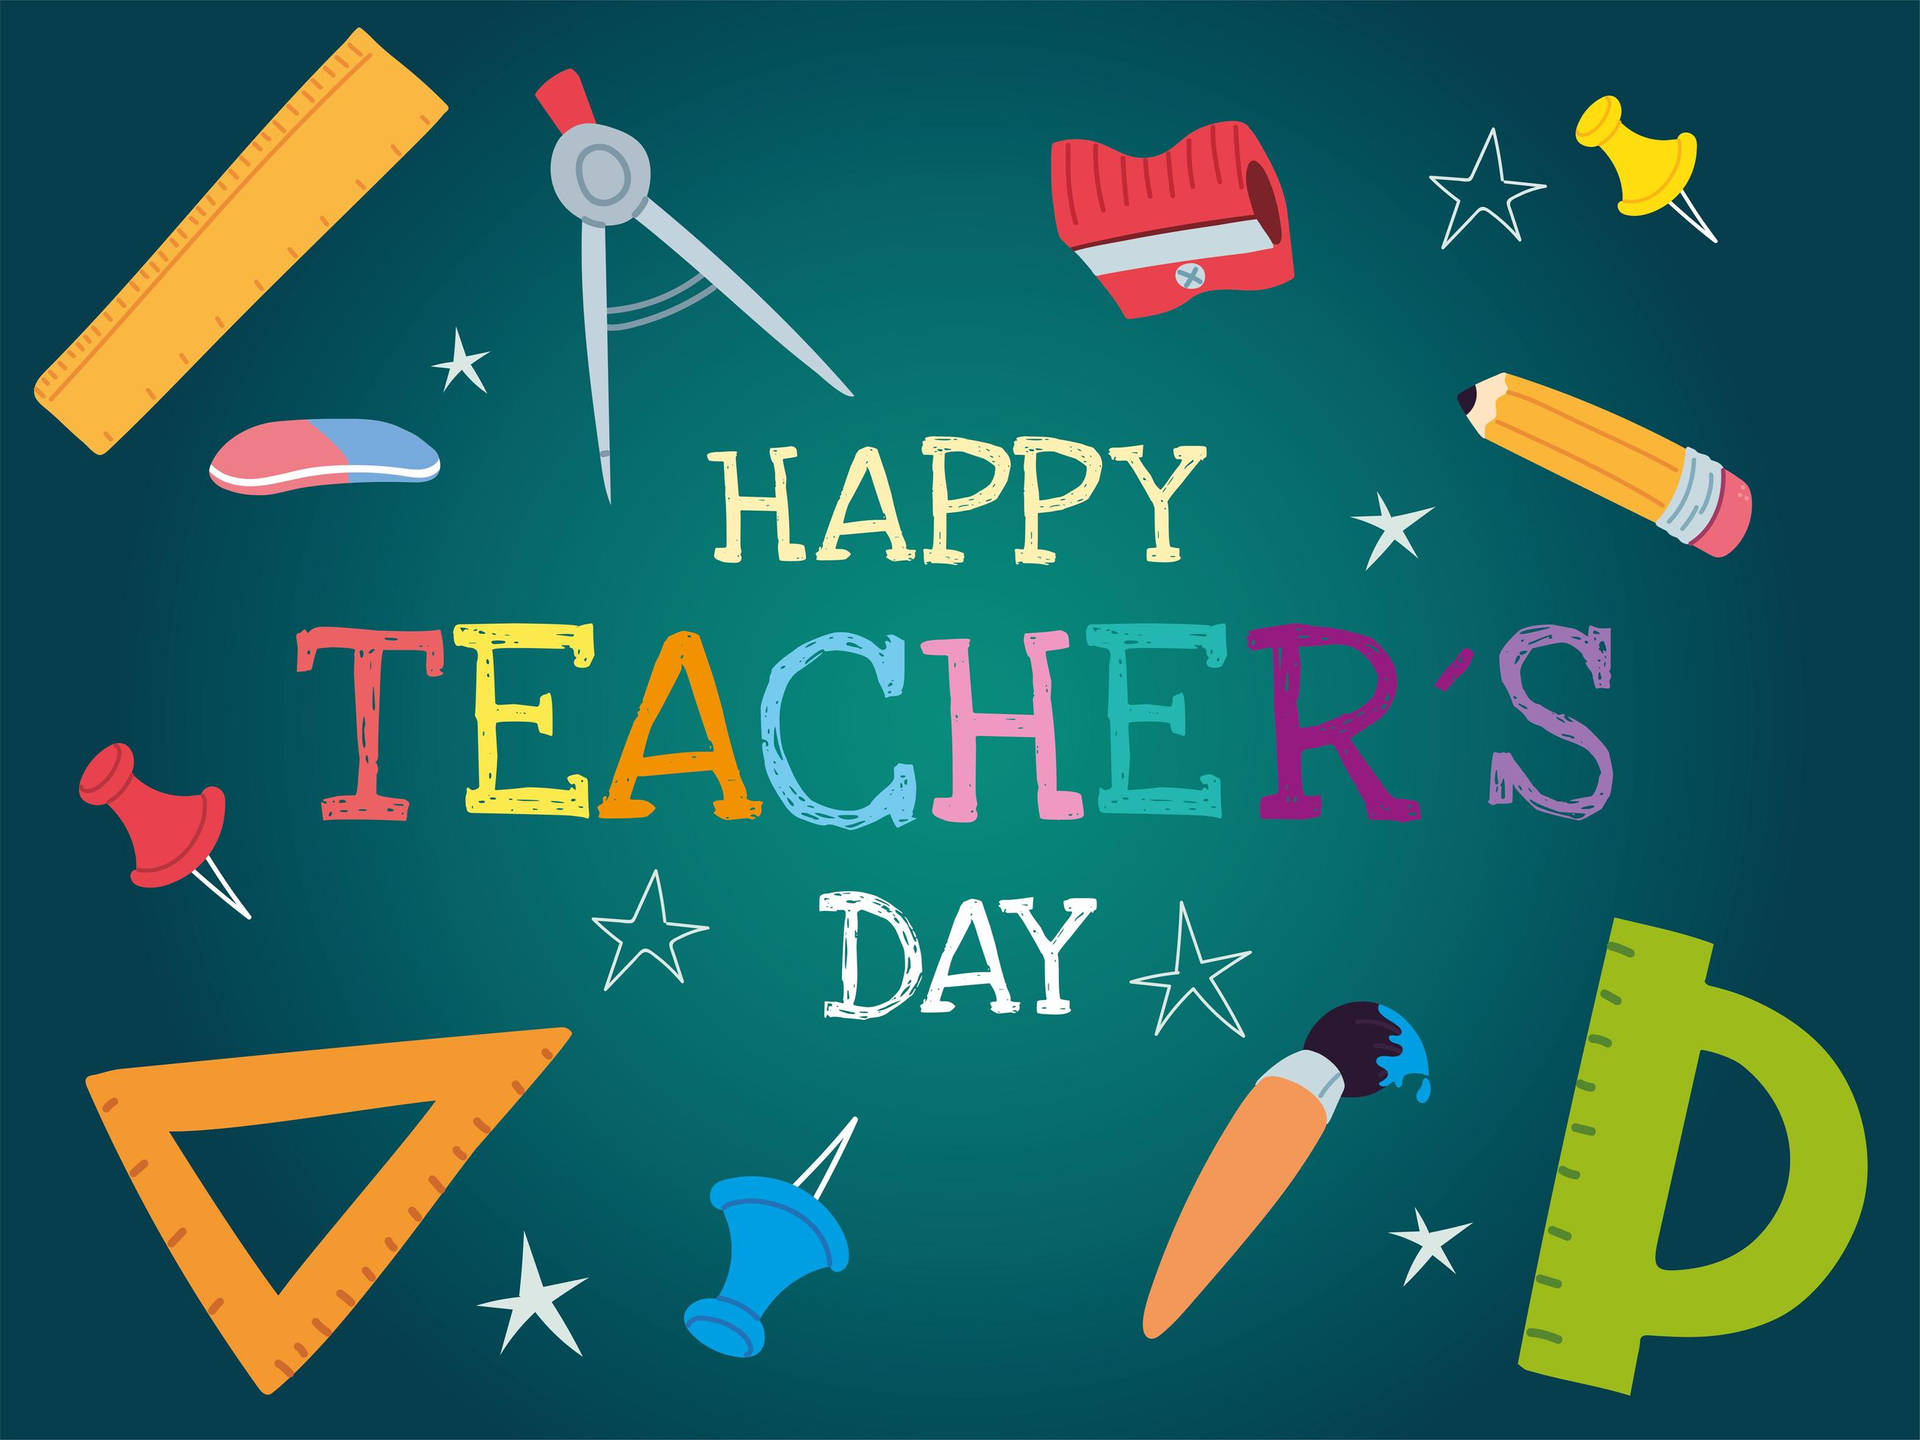 Happy Teachers' Day School Icons